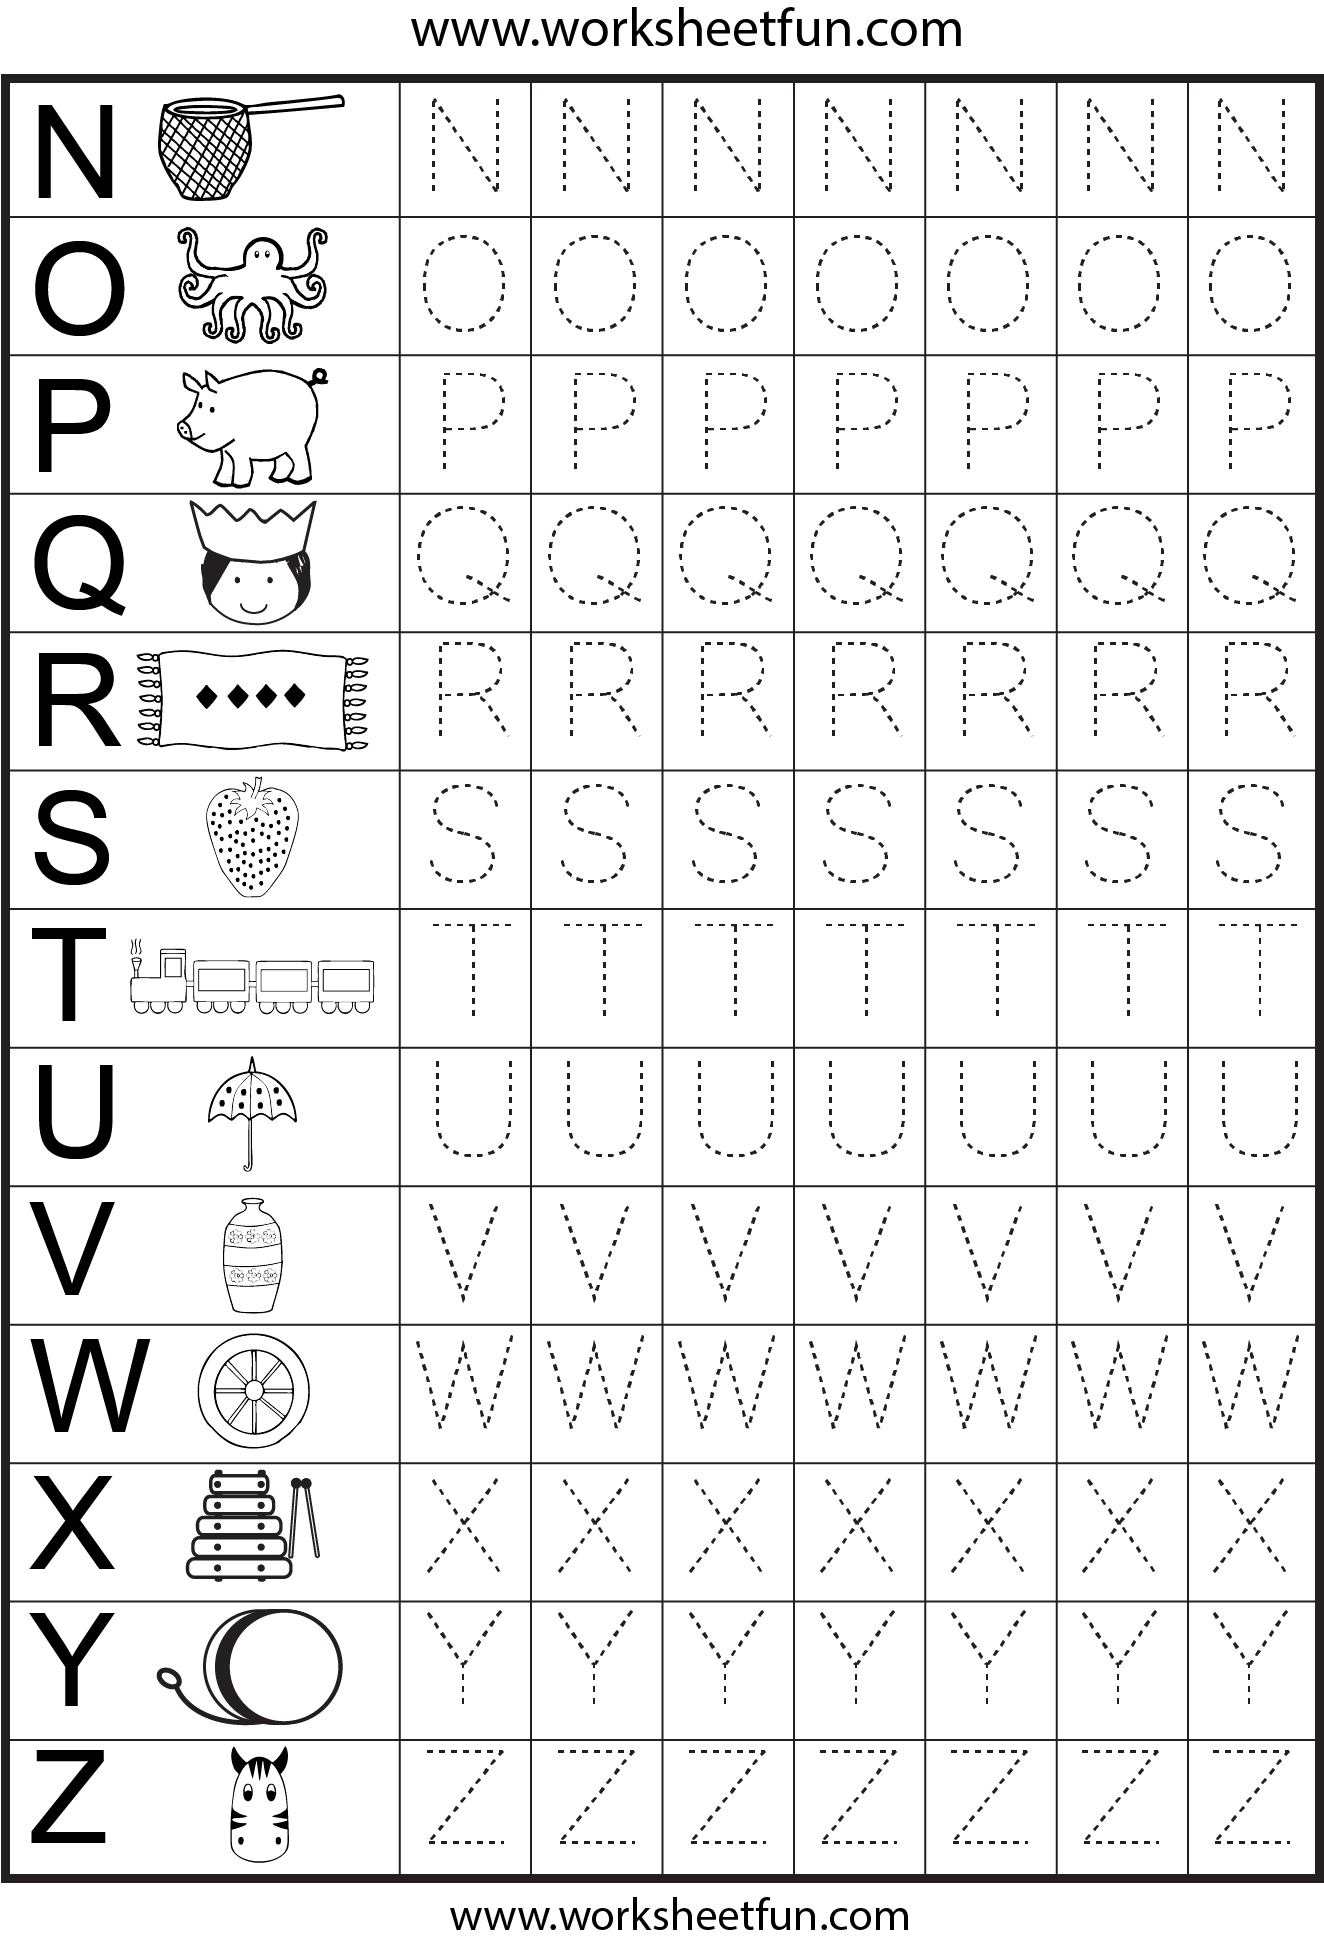 alphabetboxazPICTURE2 - Abc Worksheets For Kindergarten